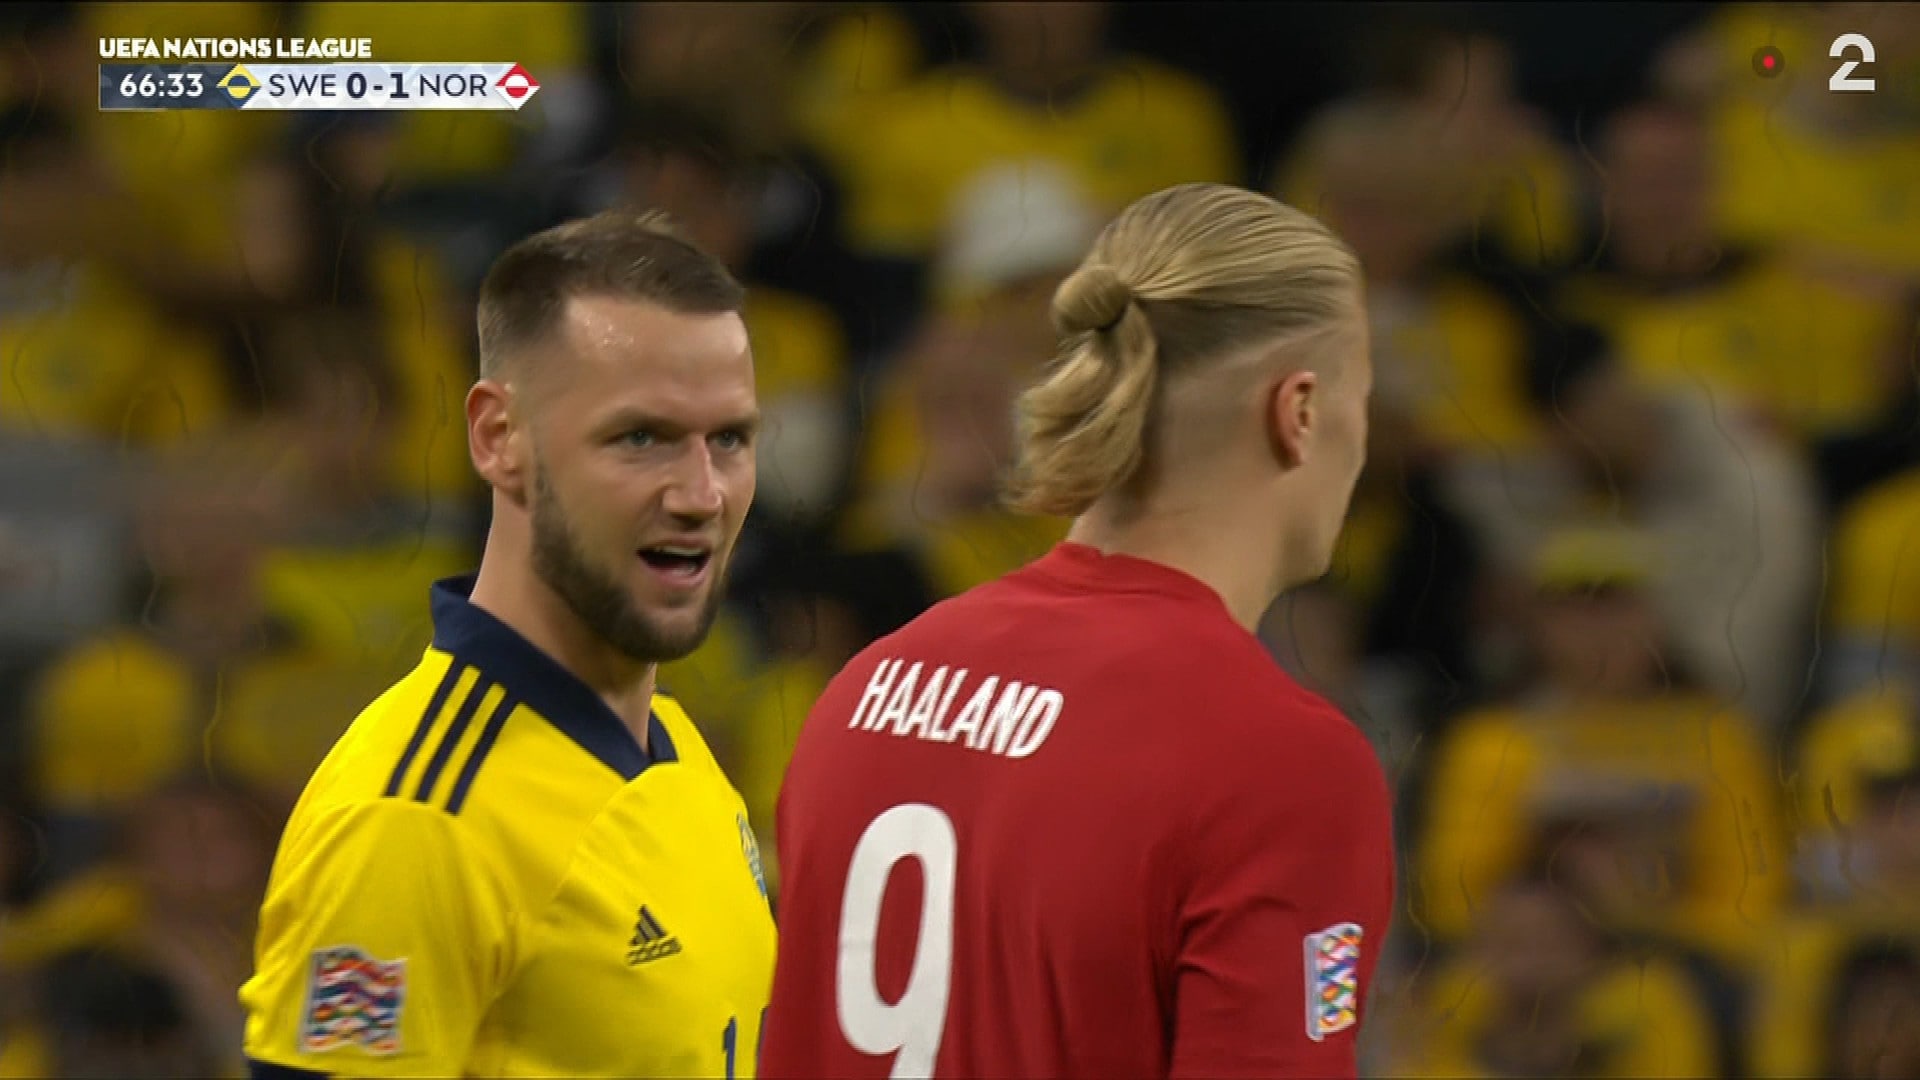 Haaland afferma di essere stato chiamato “puttana” dal giocatore svedese – NRK Sport – Notizie sportive, risultati e programma di trasmissione